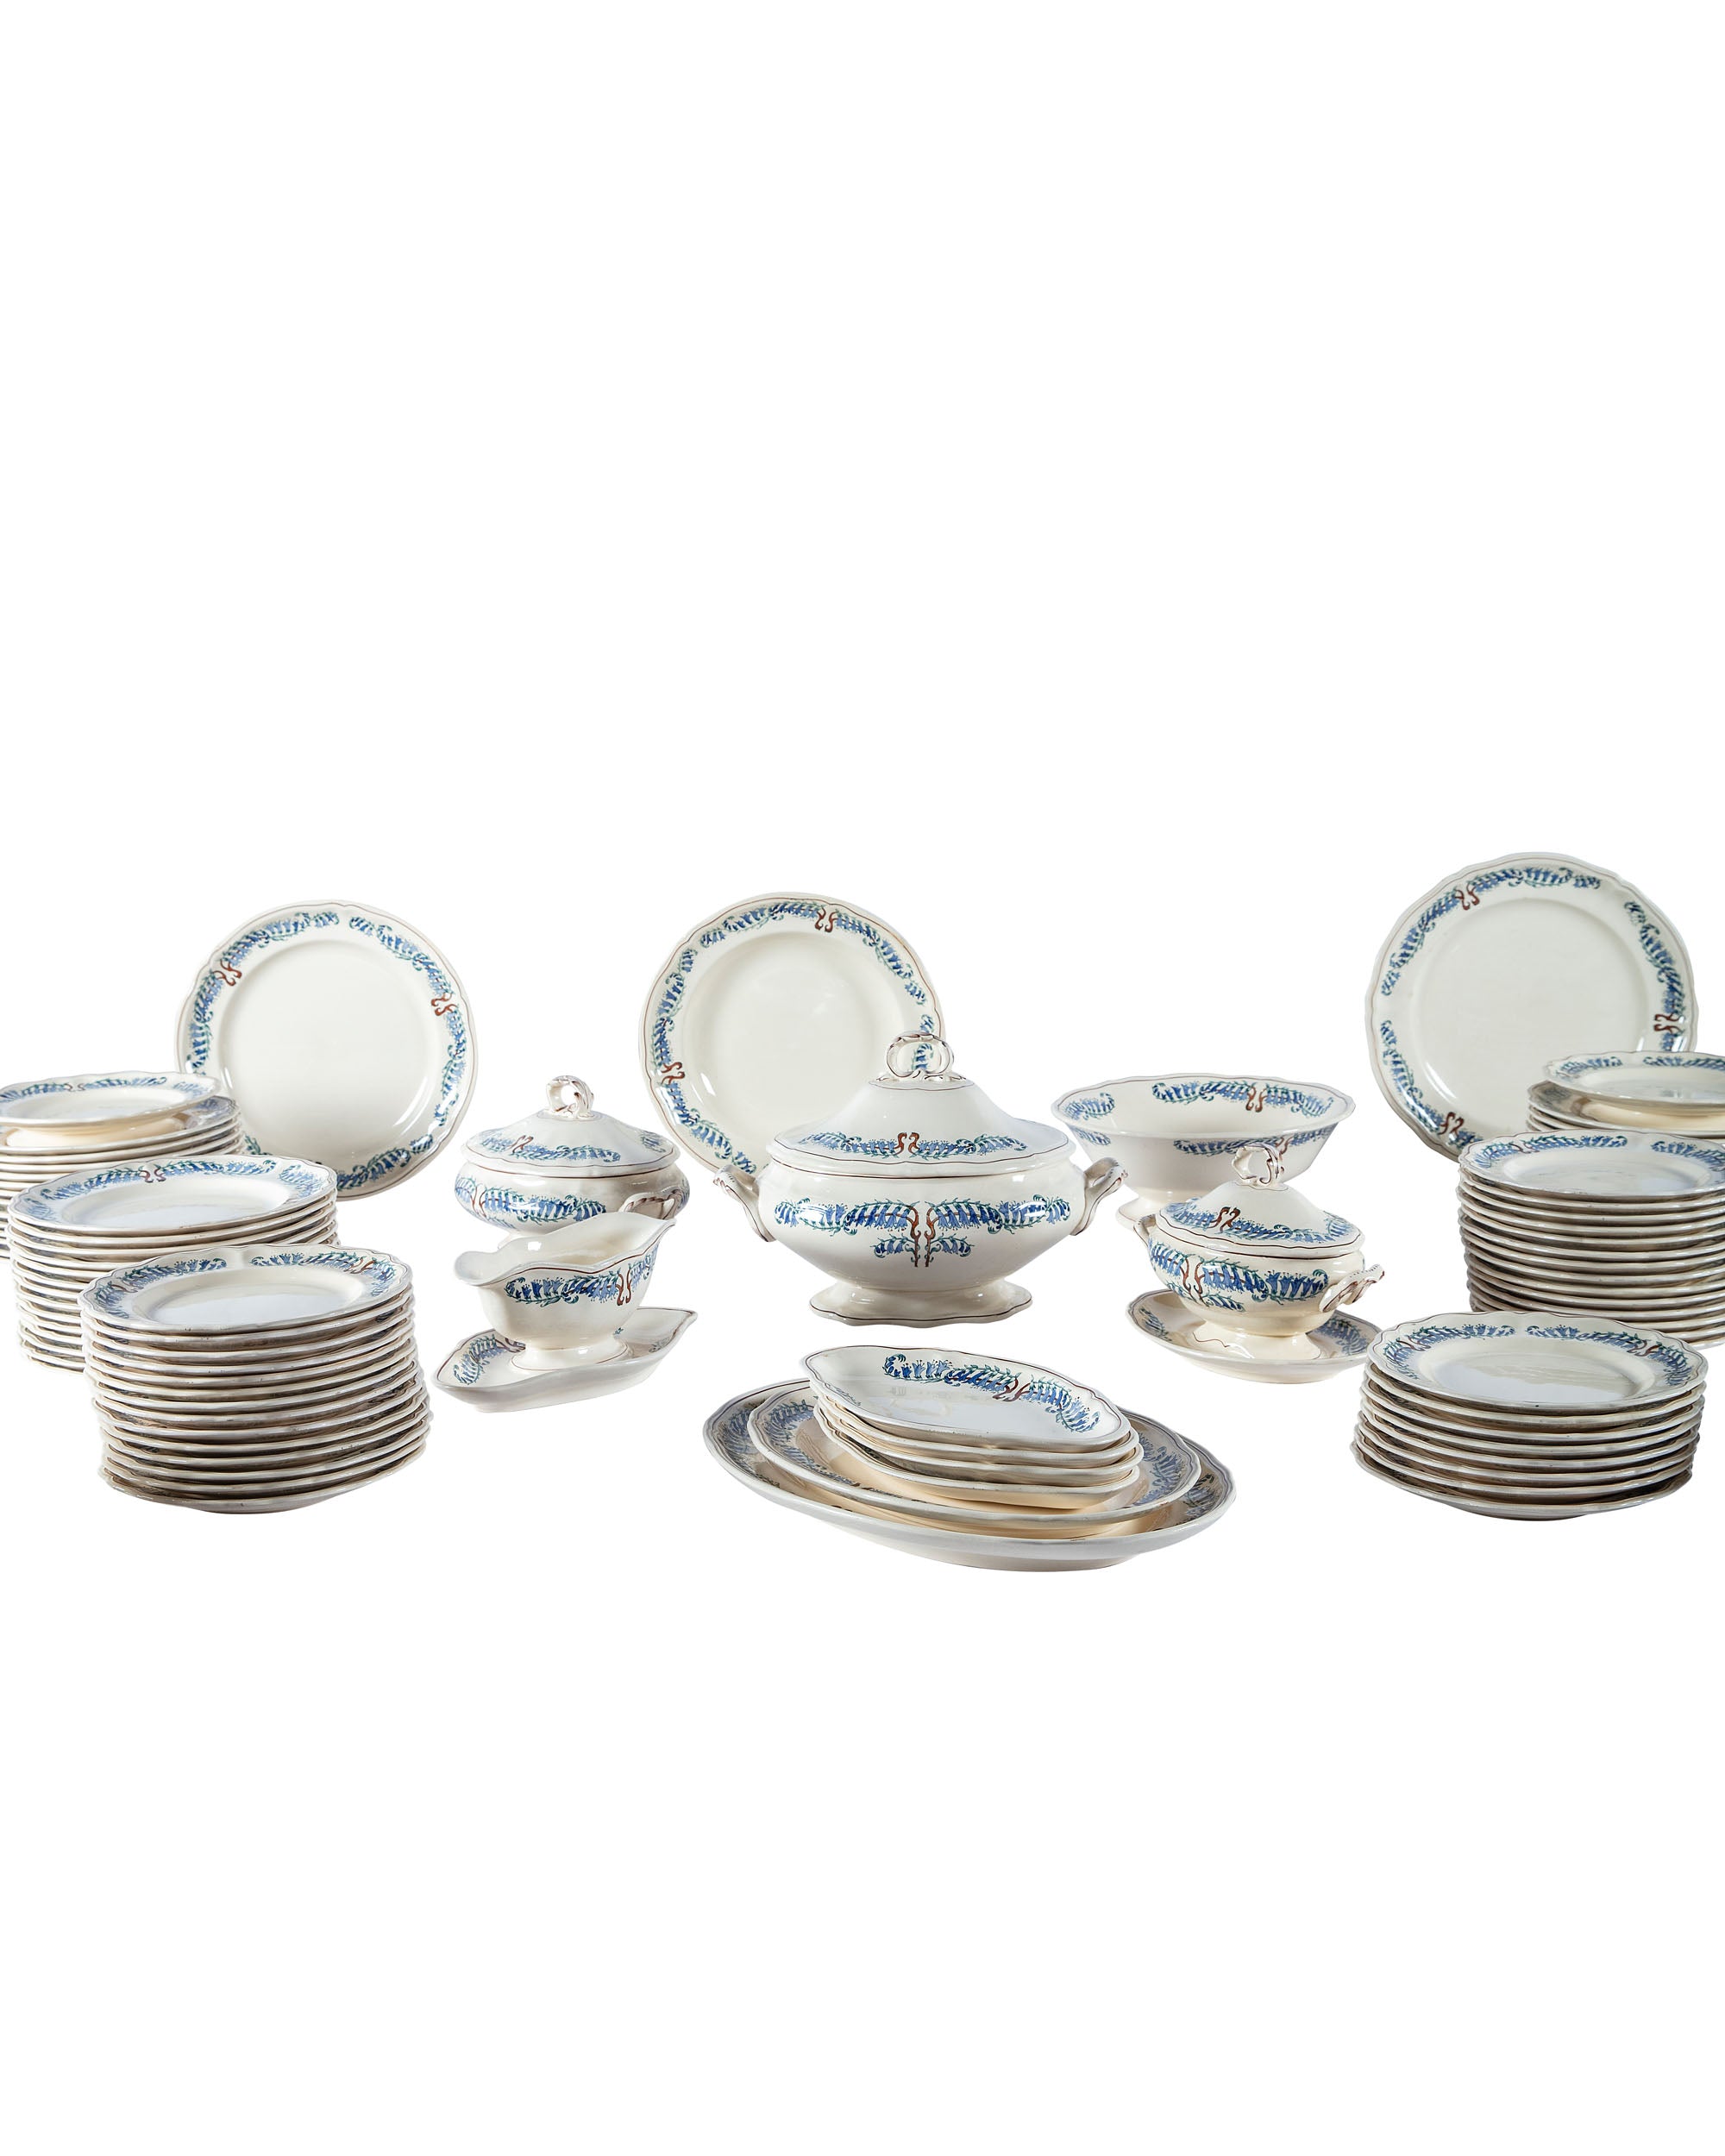 Vaisselle en porcelaine Longchamp, modèle "Fresia" (Pays du Fer). 113 pièces